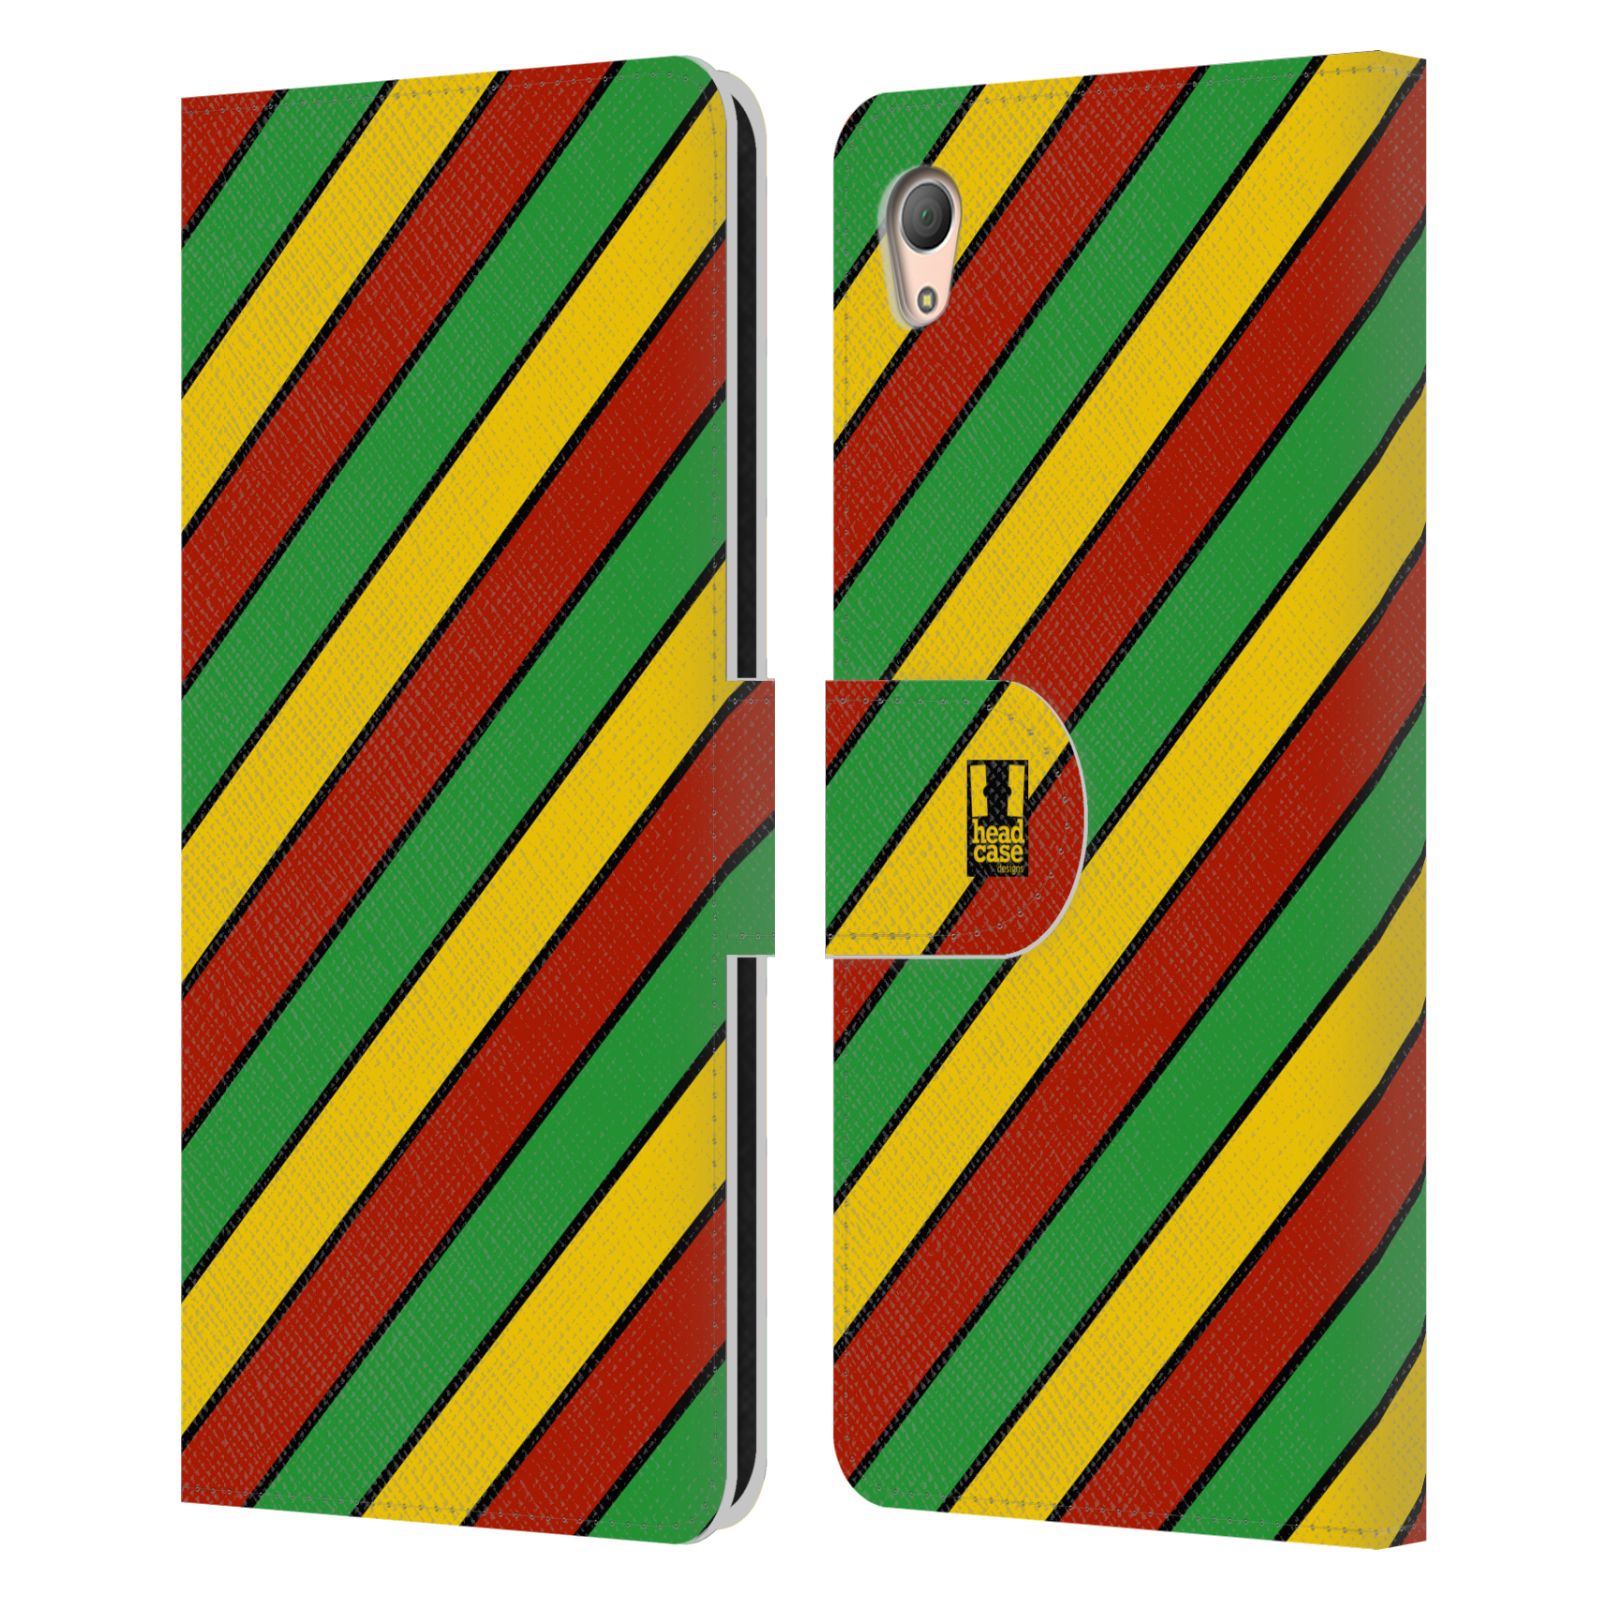 HEAD CASE Flipové pouzdro pro mobil SONY XPERIA Z3+ (PLUS) Rastafariánský motiv Jamajka diagonální pruhy